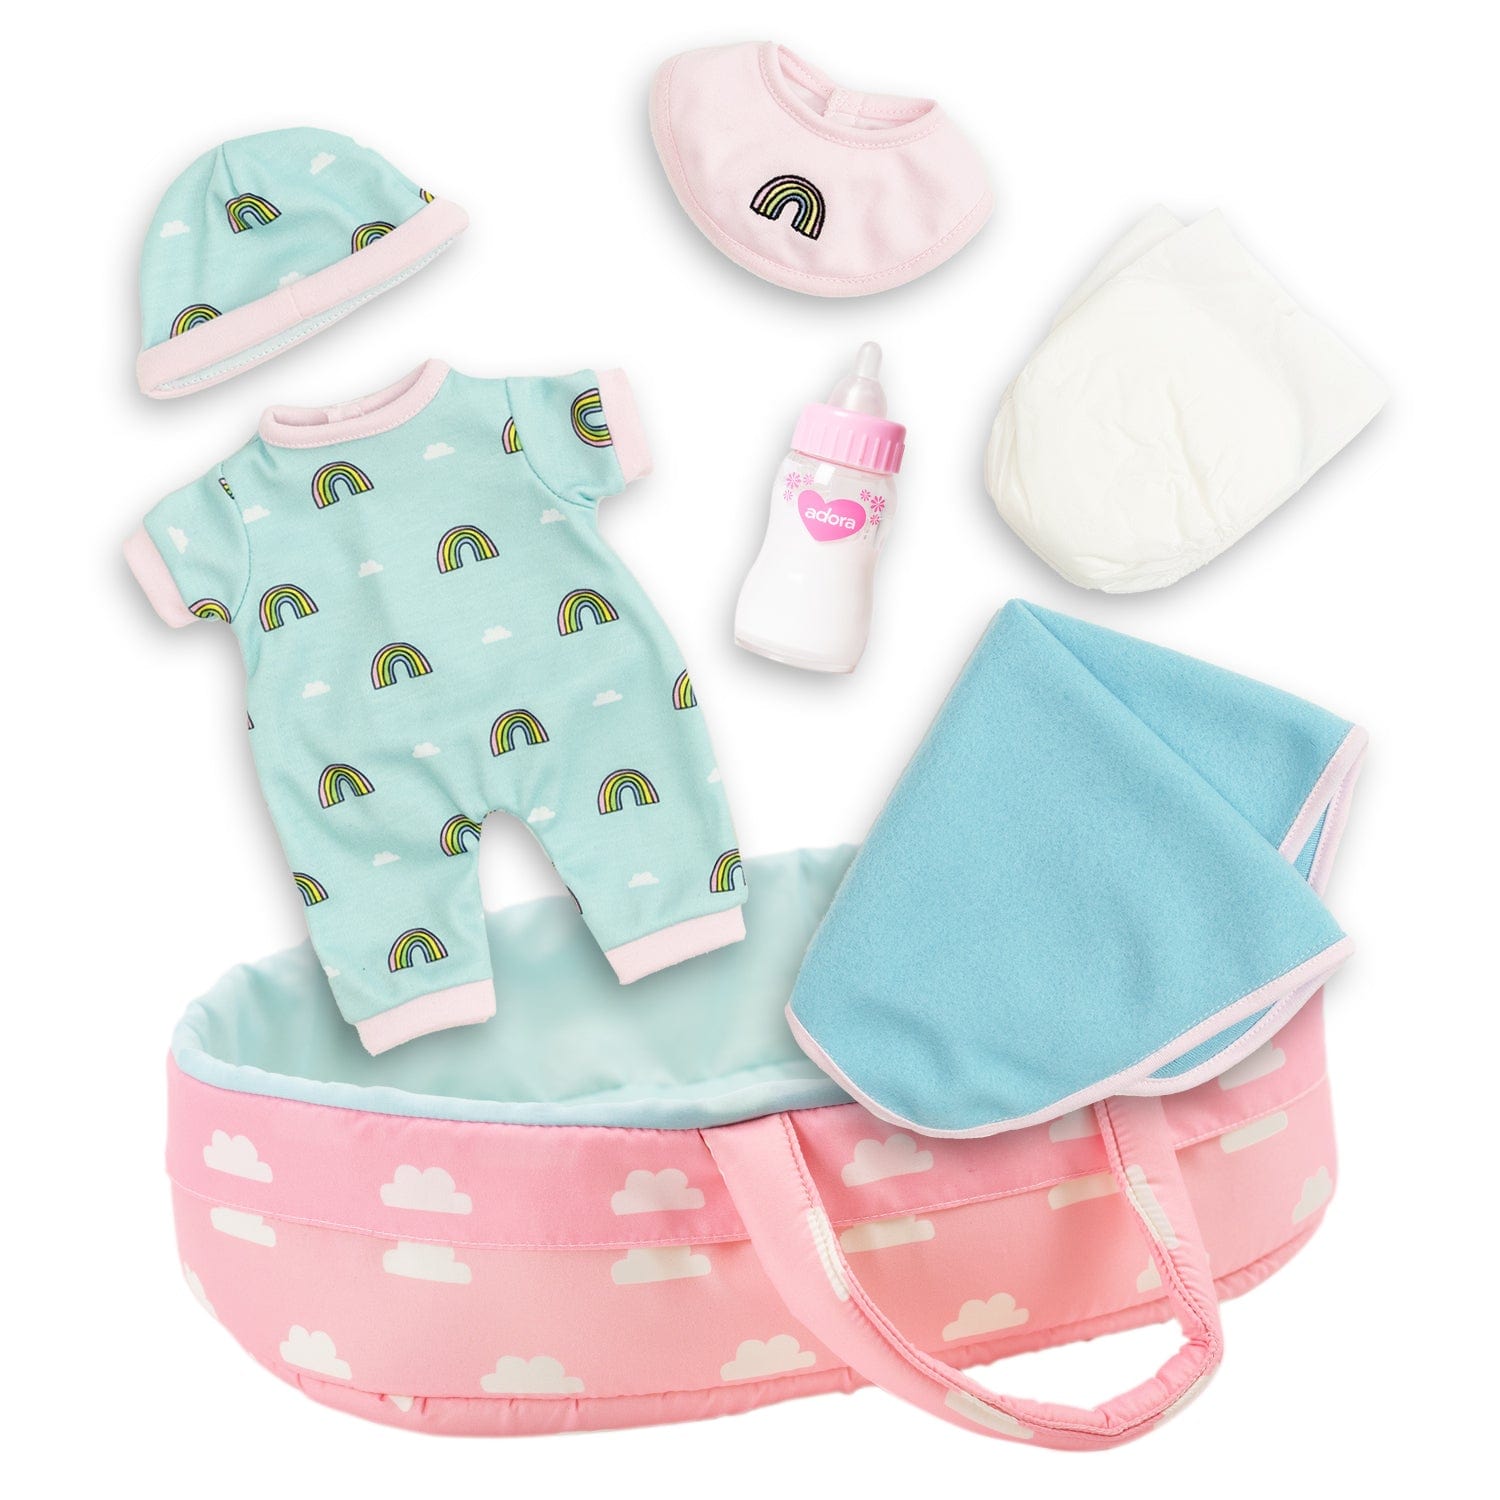 PlayTime Nurturing Essentials for 13 inch Babies -7 Piece Gift Set in Rainbow print